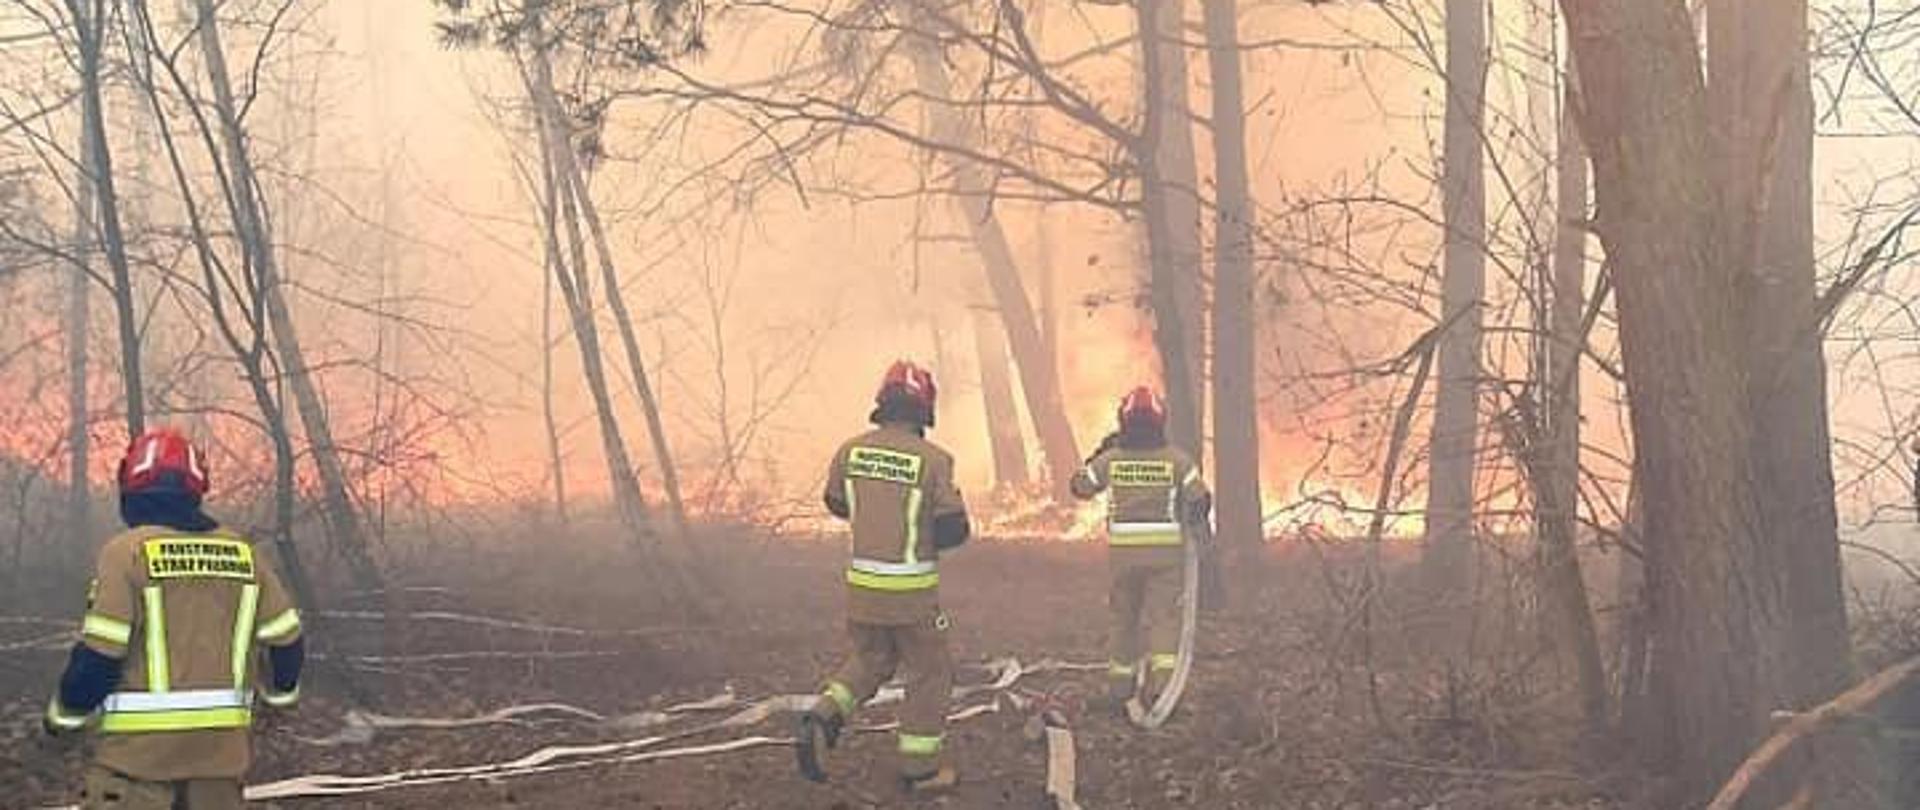 Pożar lasu w pełni rozwinięty. Pali się poszycie, które przechodzi w pożar wierzchołkowy. Trzech ratowników JOP przed forntem pożaru ustawia stanowisko do podania prądów wody w natarciu.